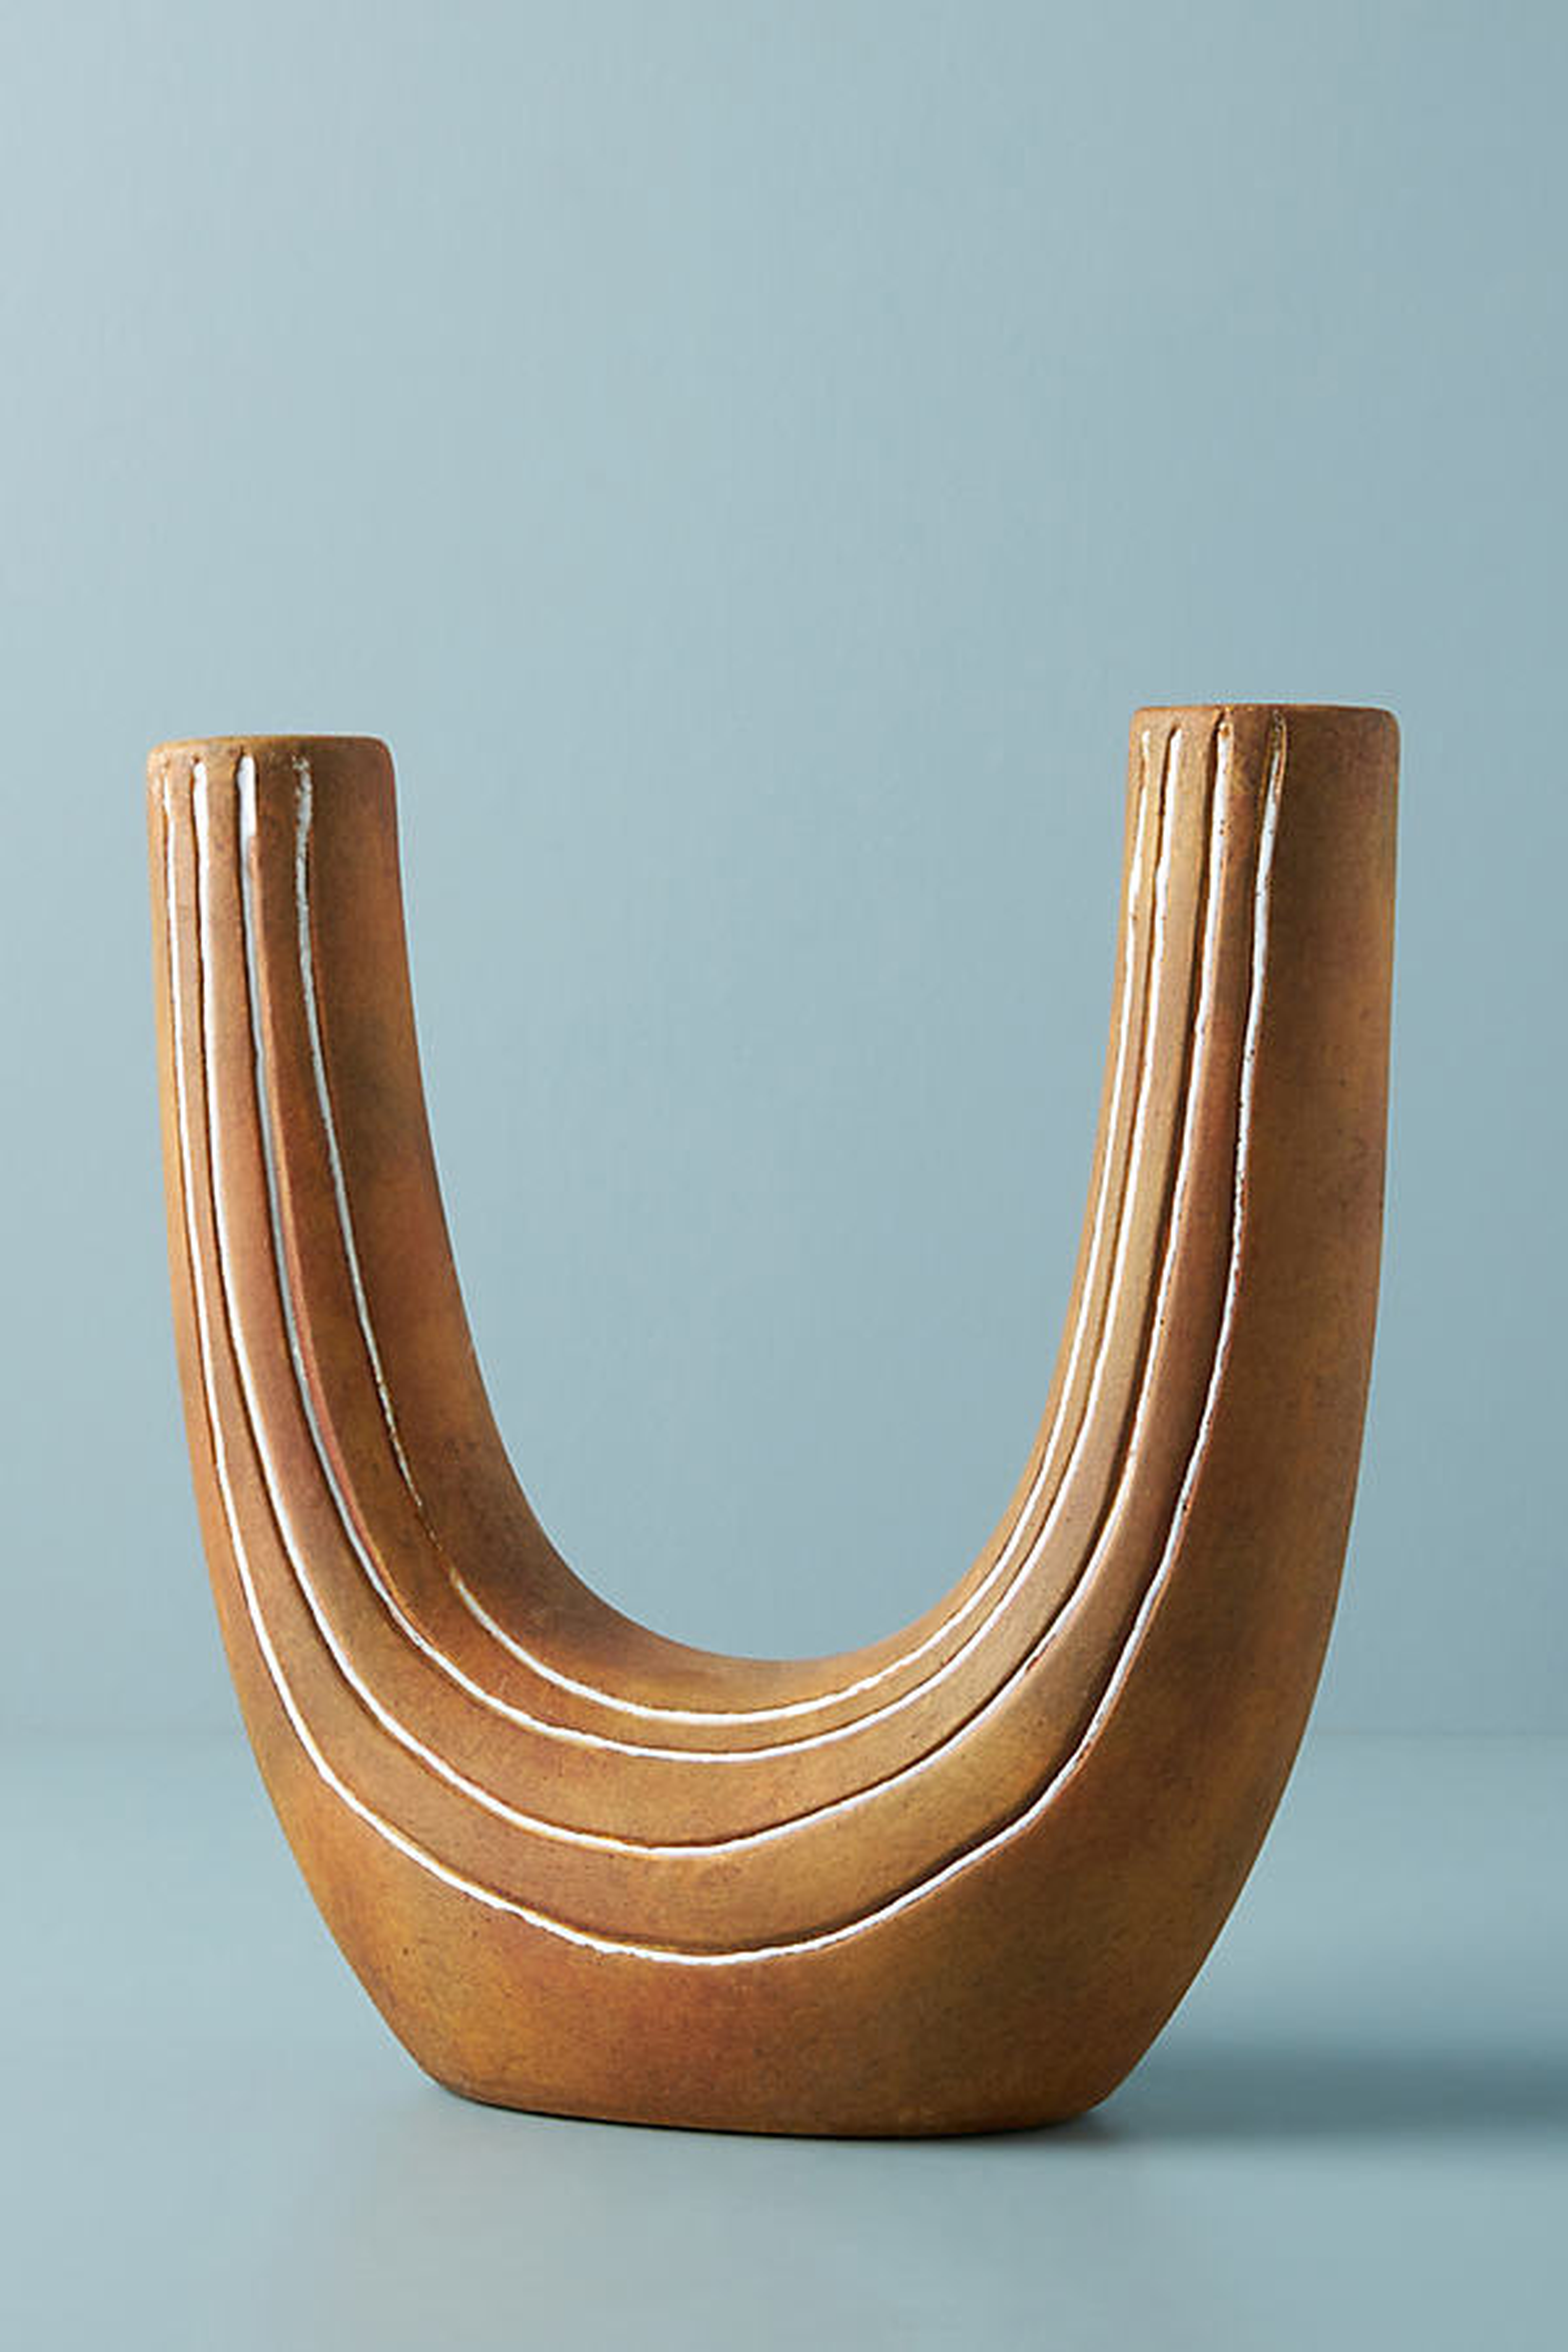 Turner U-Shaped Vase By Anthropologie in Brown - Anthropologie